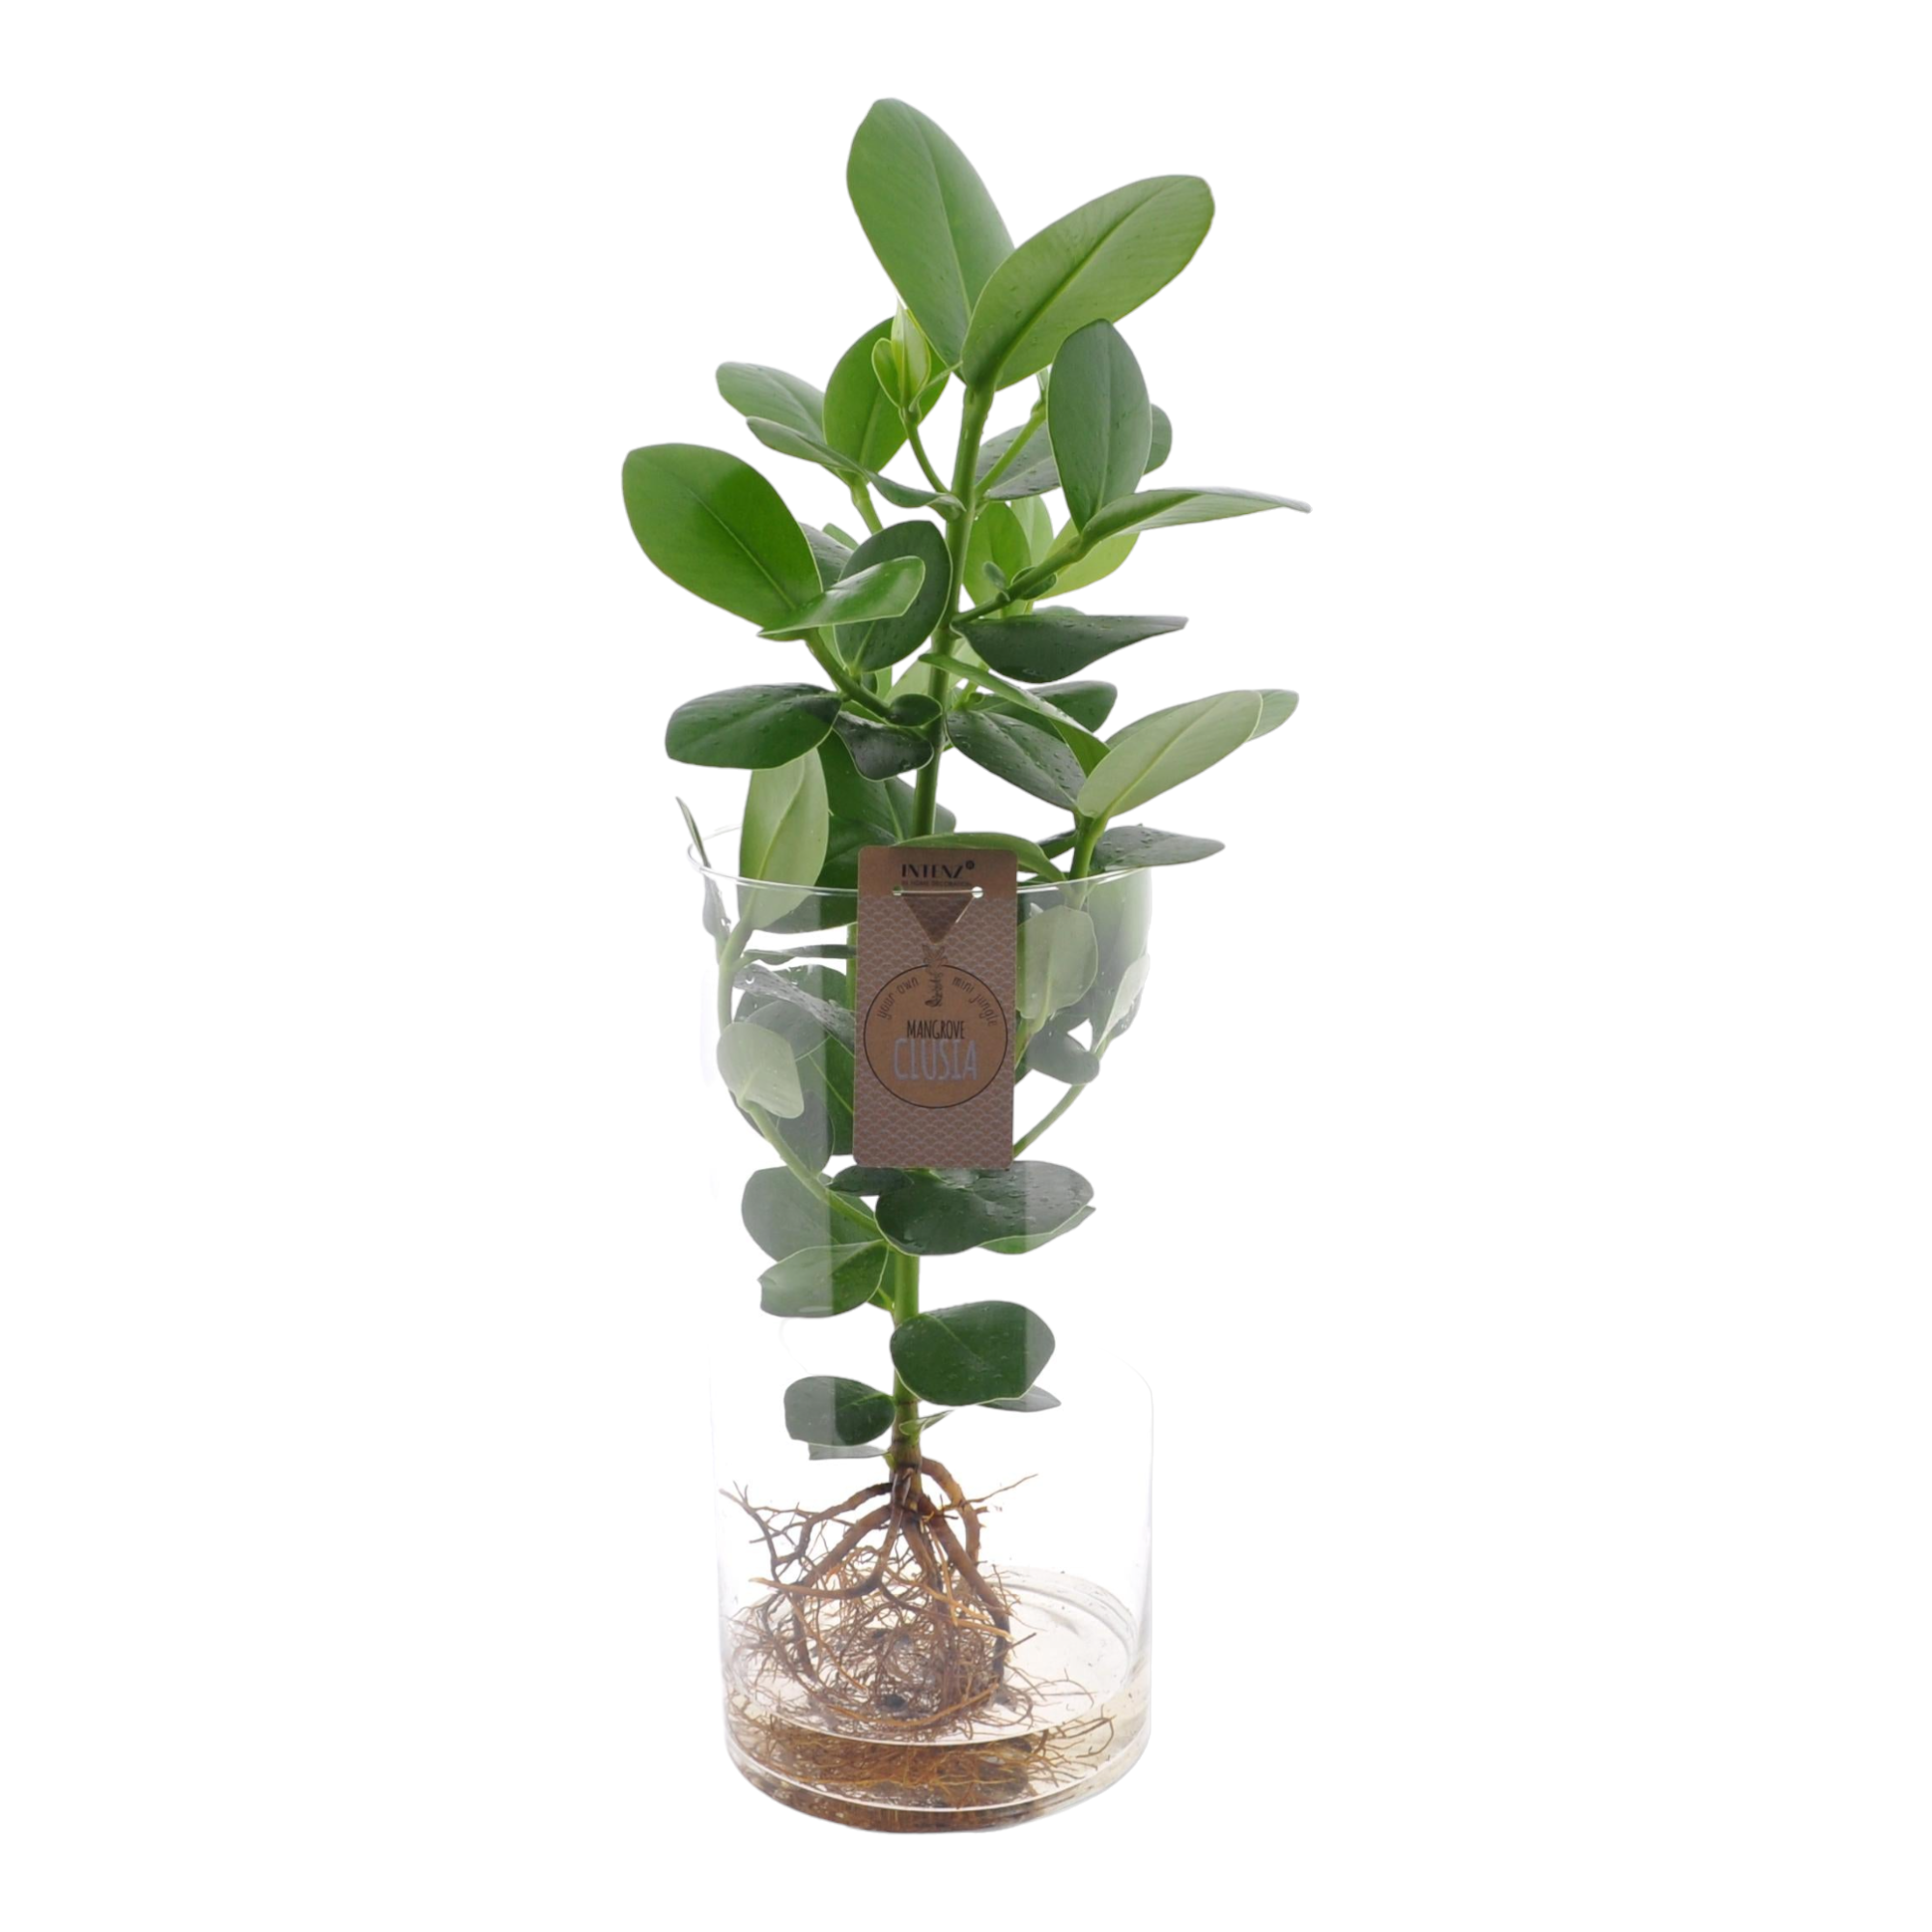 Plante d'intérieur - clusia en hydroculture et son tube en verre 60.0cm